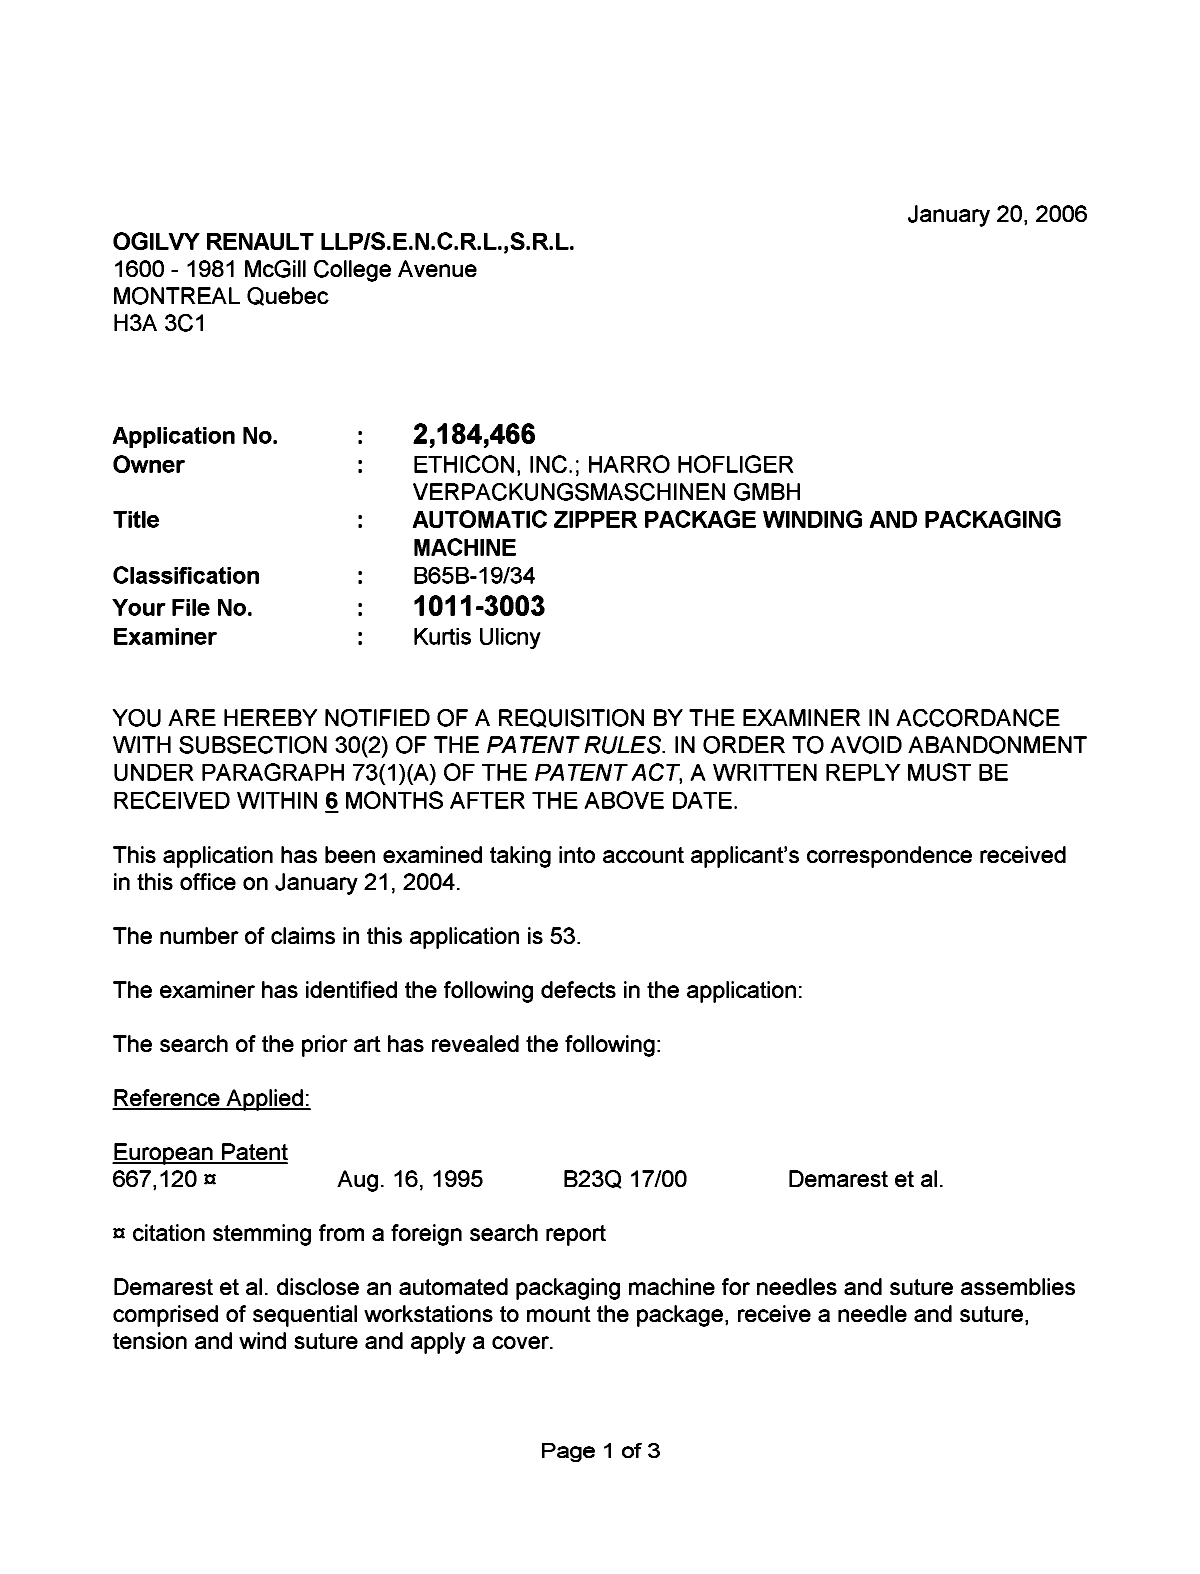 Document de brevet canadien 2184466. Poursuite-Amendment 20060120. Image 1 de 3